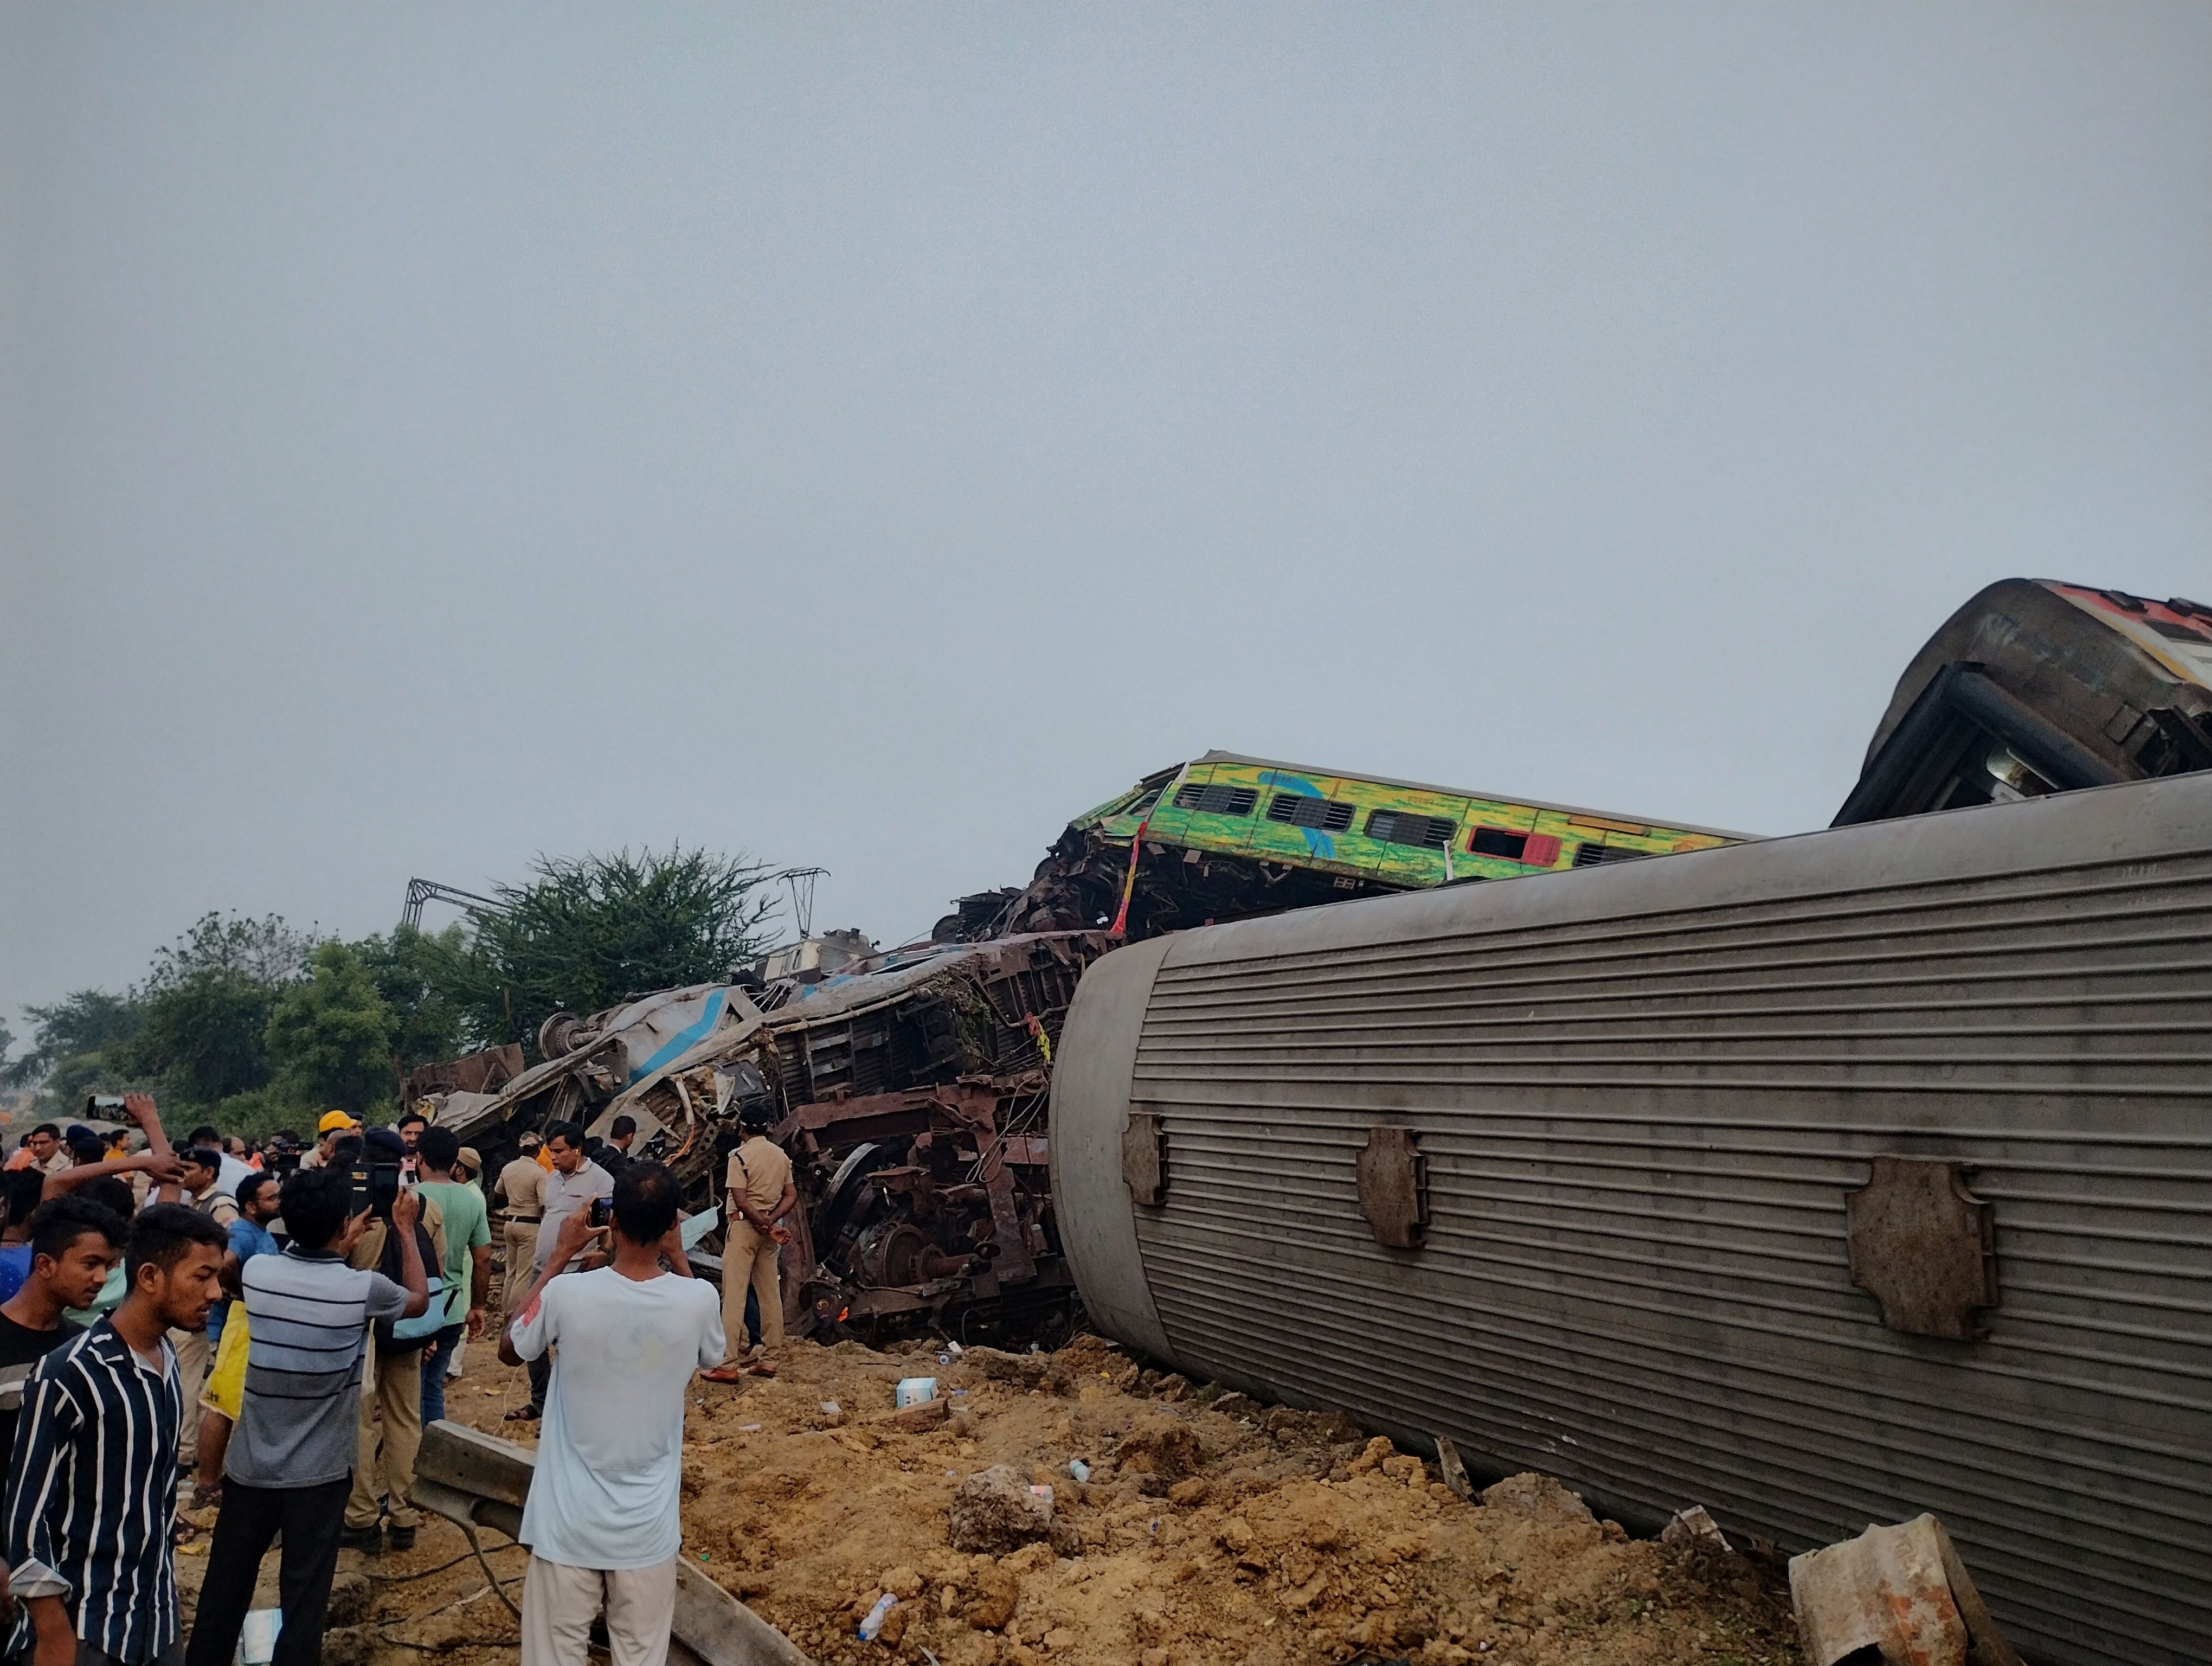 Este es el peor accidente ferroviario que sufre la India en la última década, que aunque está habituada a vivir este tipo de siniestros no suelen ser tan mortíferos. (REUTERS)